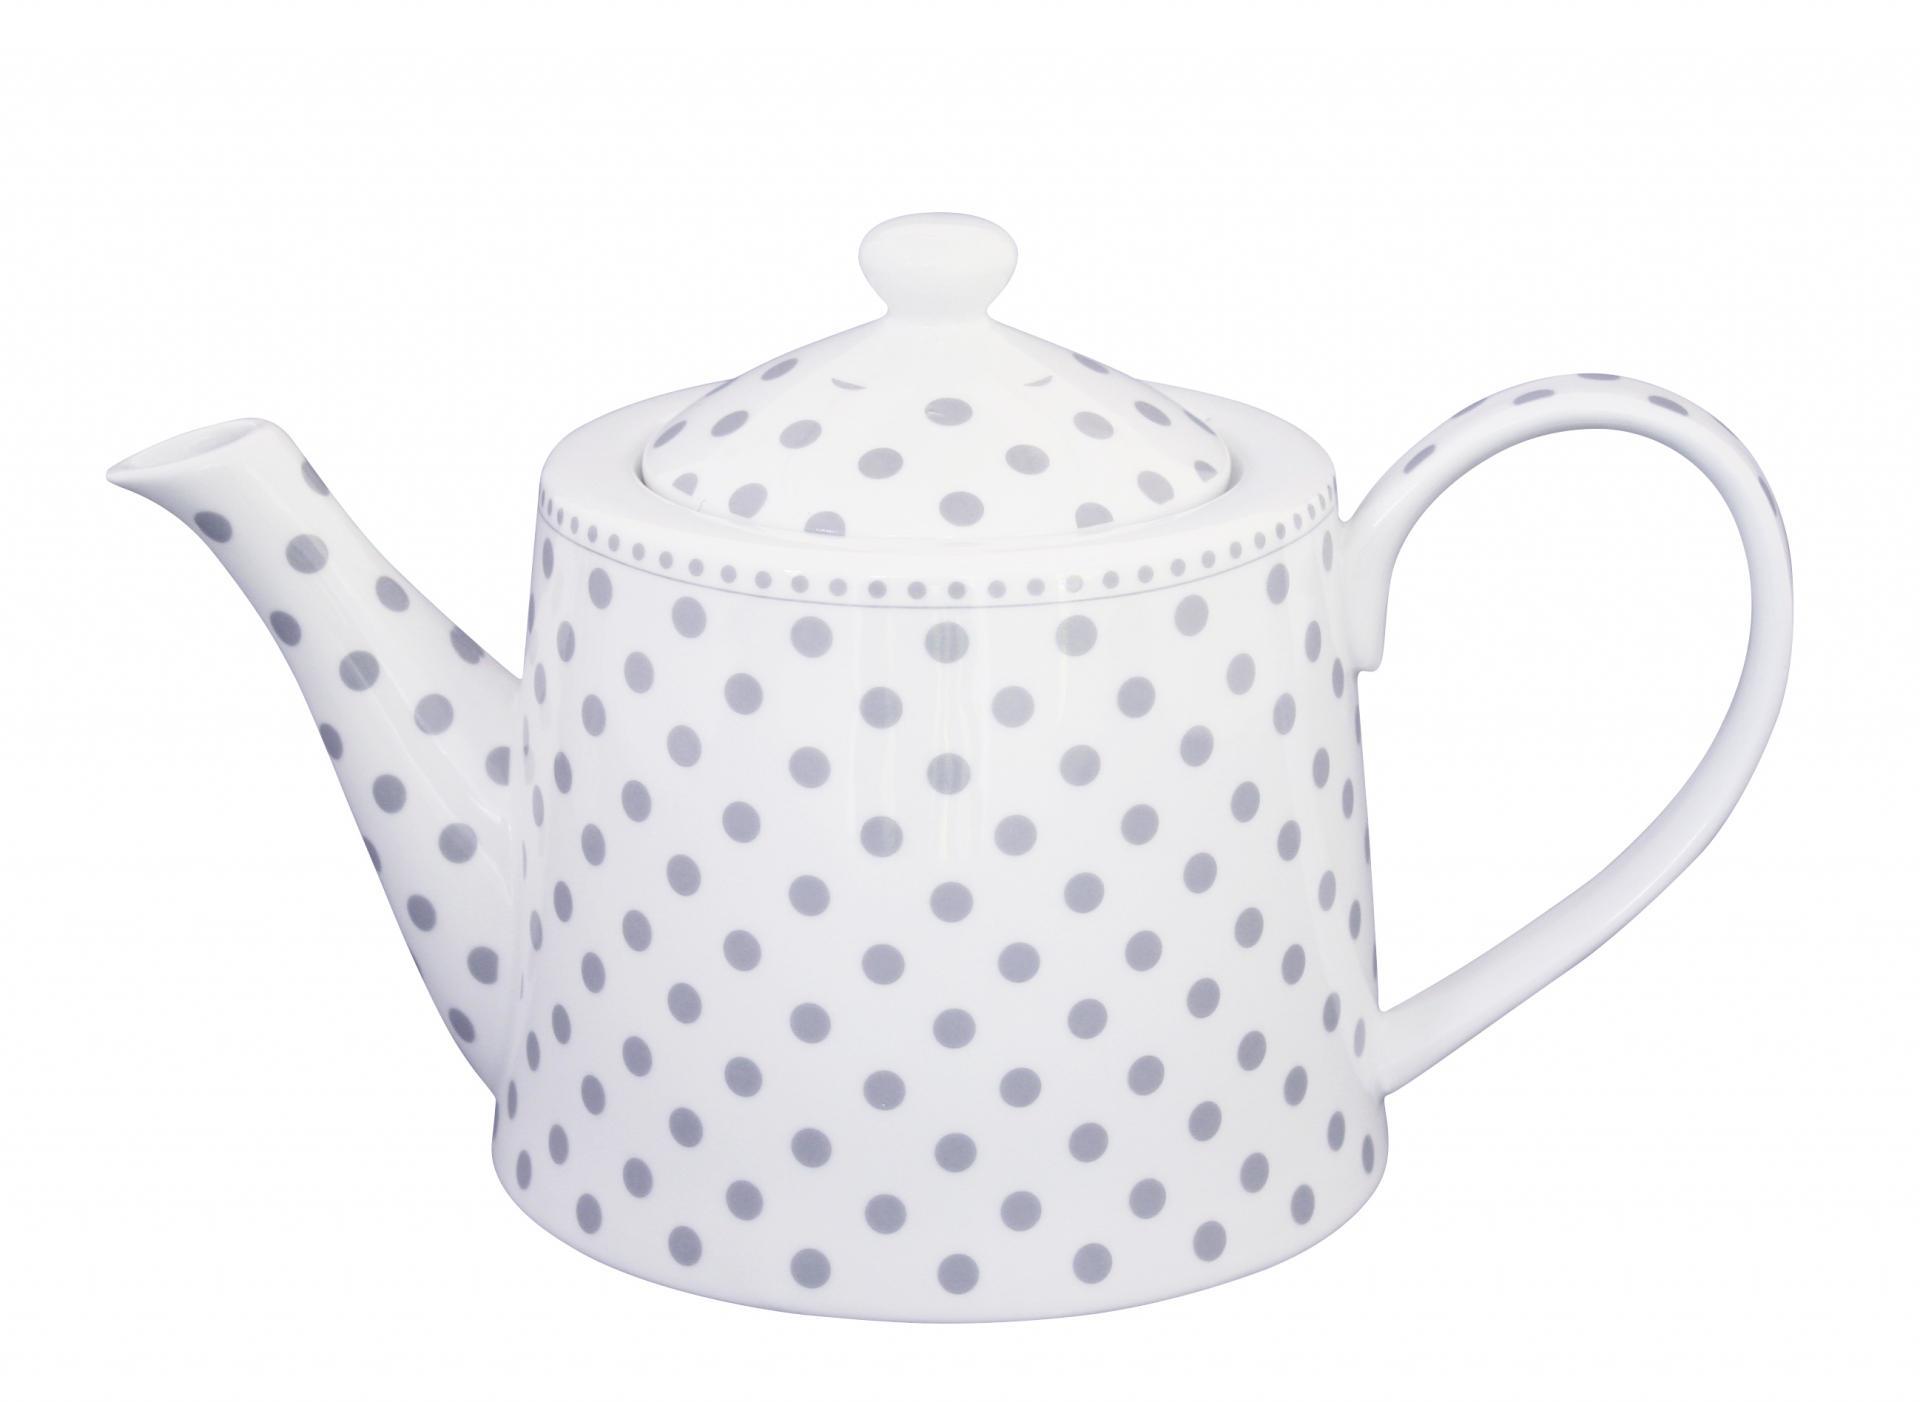 Porcelánová konvice na čaj s šedými puntíky | Bella Rose